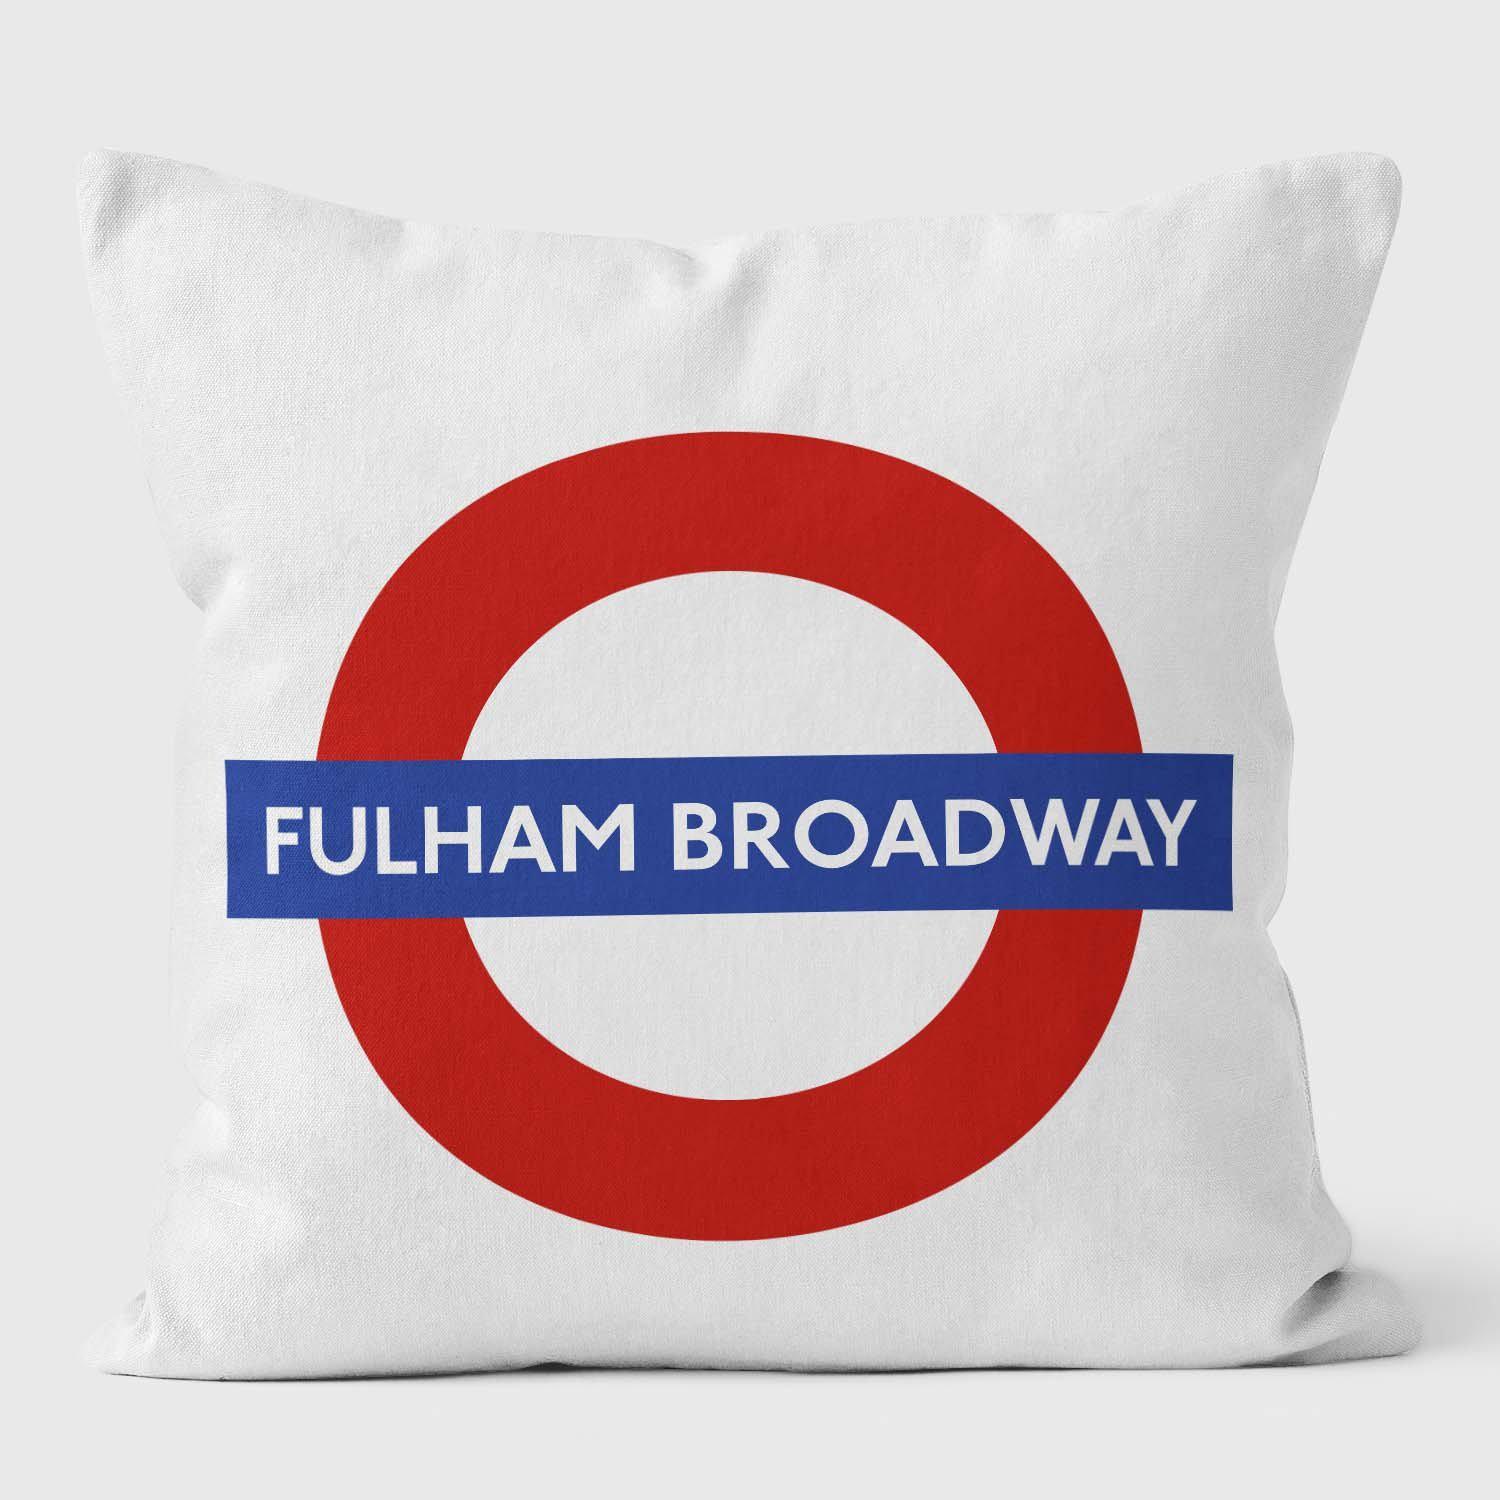 Fulham Broadway London Underground Tube Station Roundel Cushion - Handmade Cushions UK - WeLoveCushions